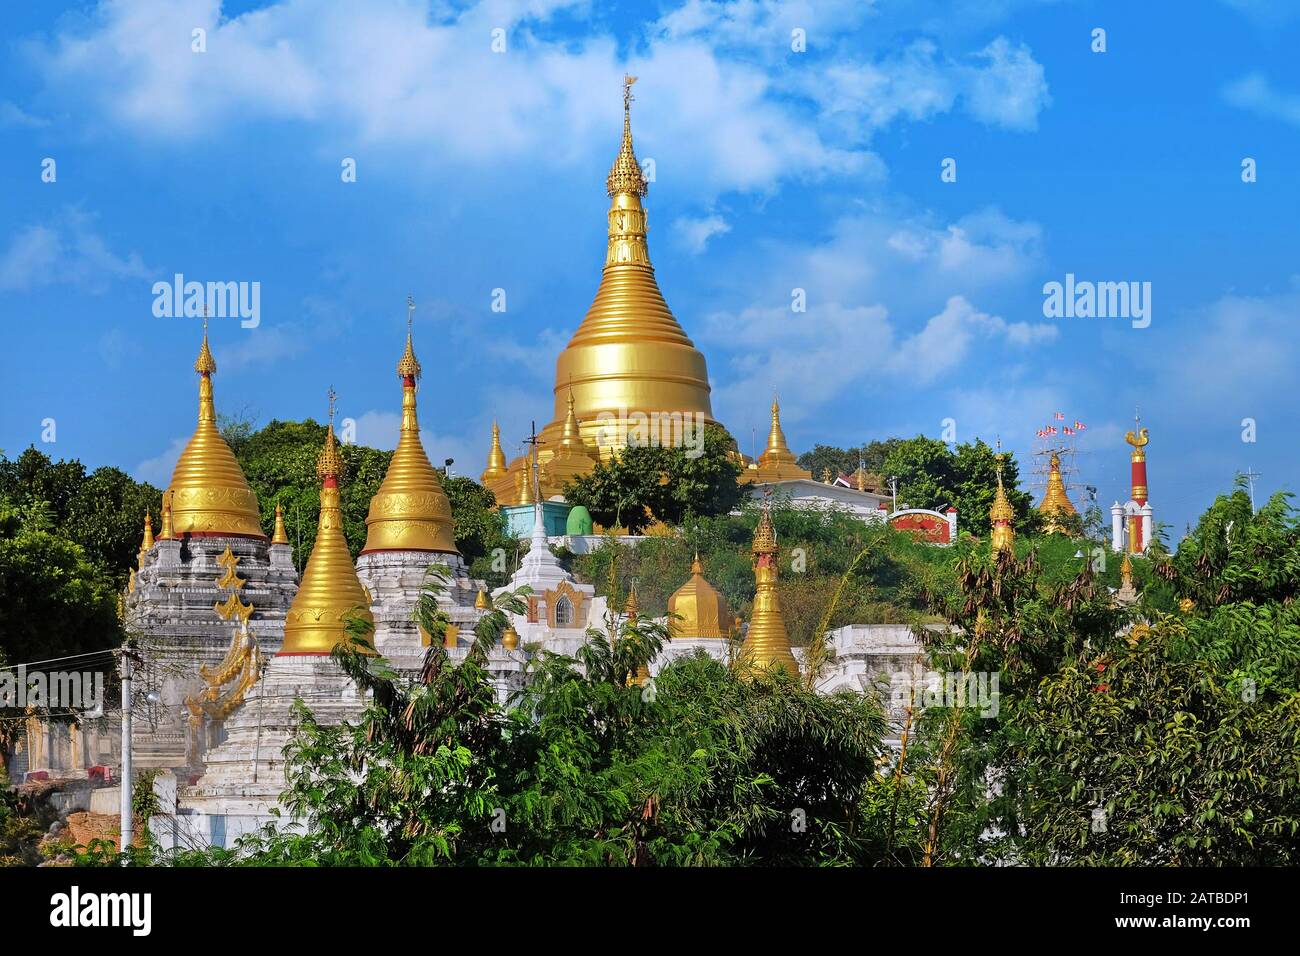 Blick auf das goldene Dach einer birmanischen Pagode in Mingun, Mandalay, Myanmar, umgeben von grüner Vegetation, gegen einen blauen Himmel, der von weißen Wolken bedeckt ist. Stockfoto